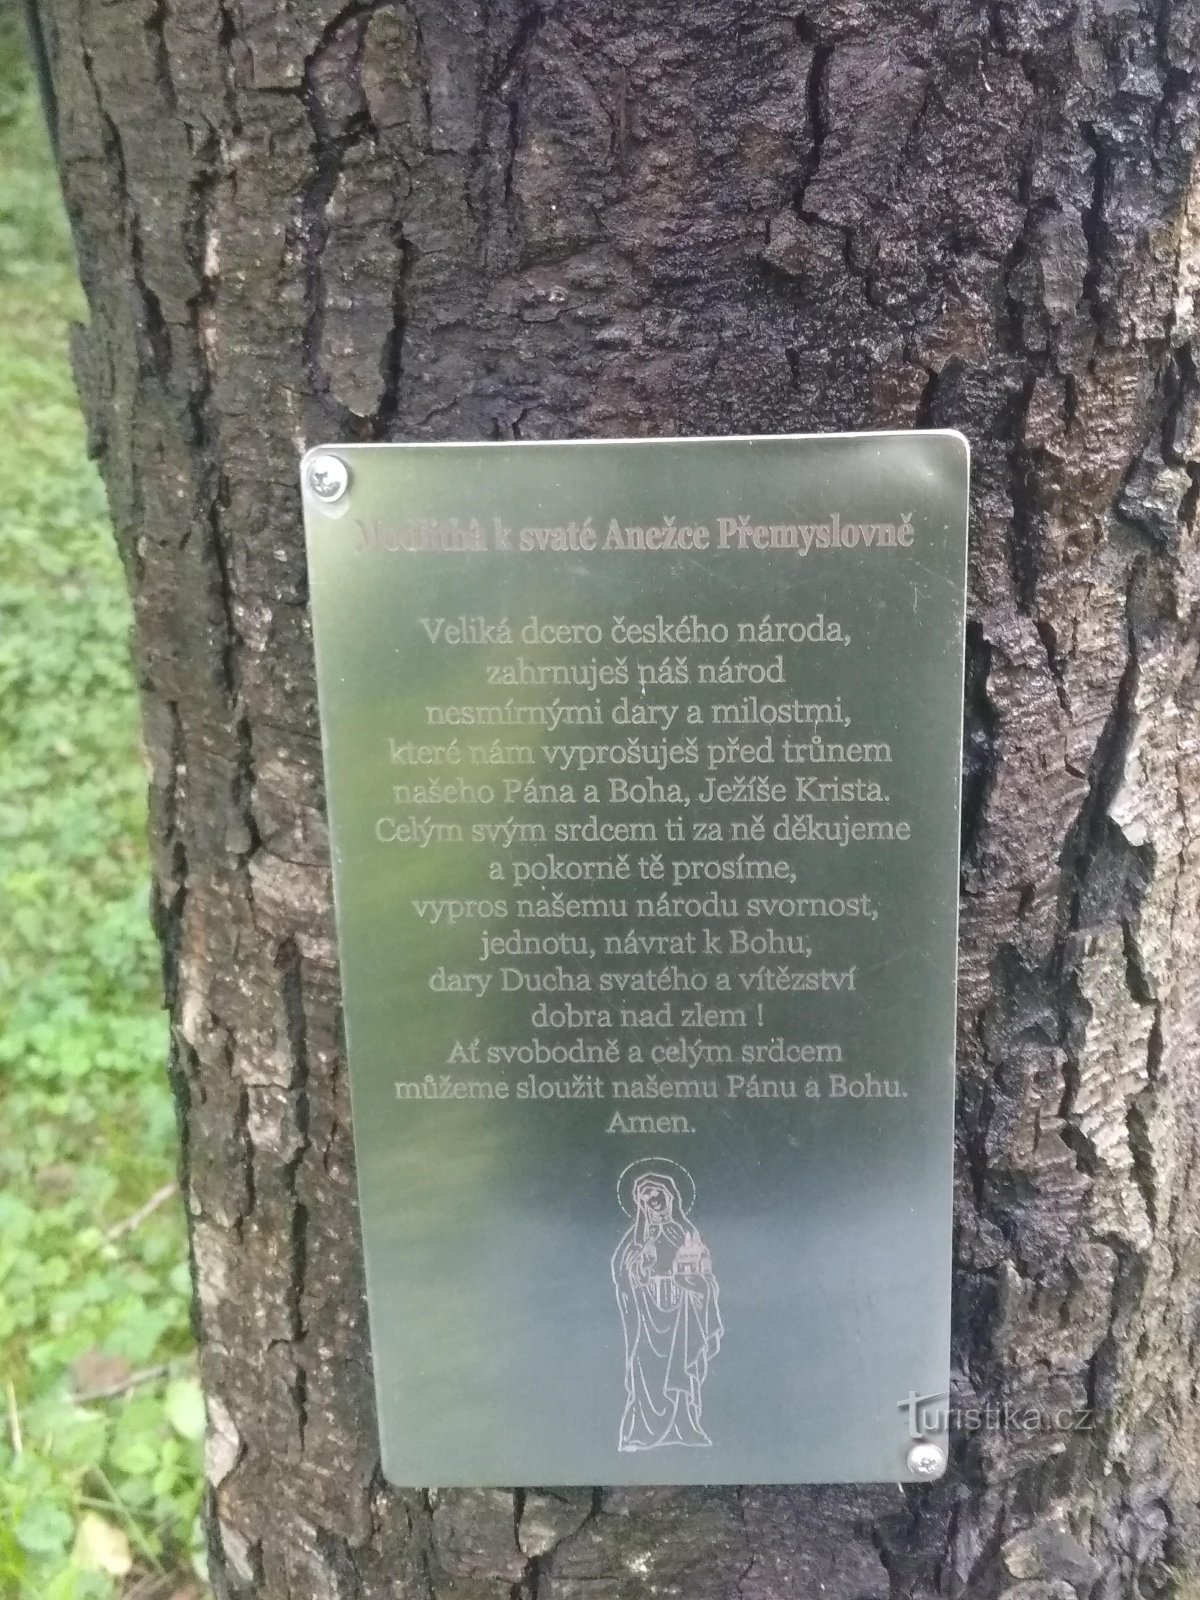 Local de peregrinação de Anežka Přemyslovna